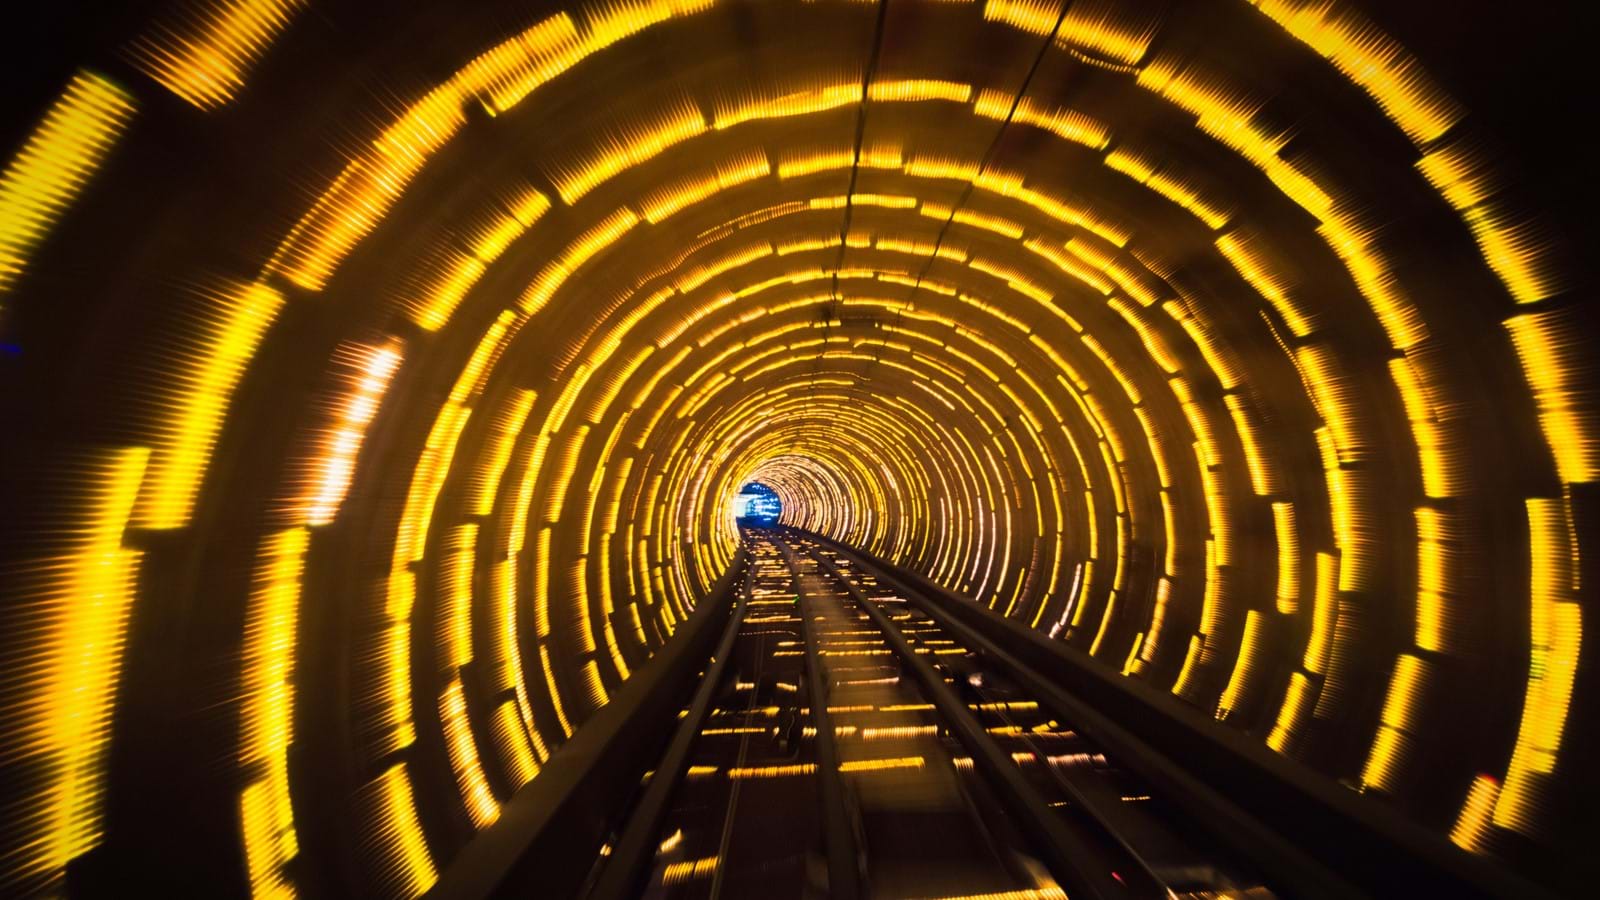 Train riding through a tunnel